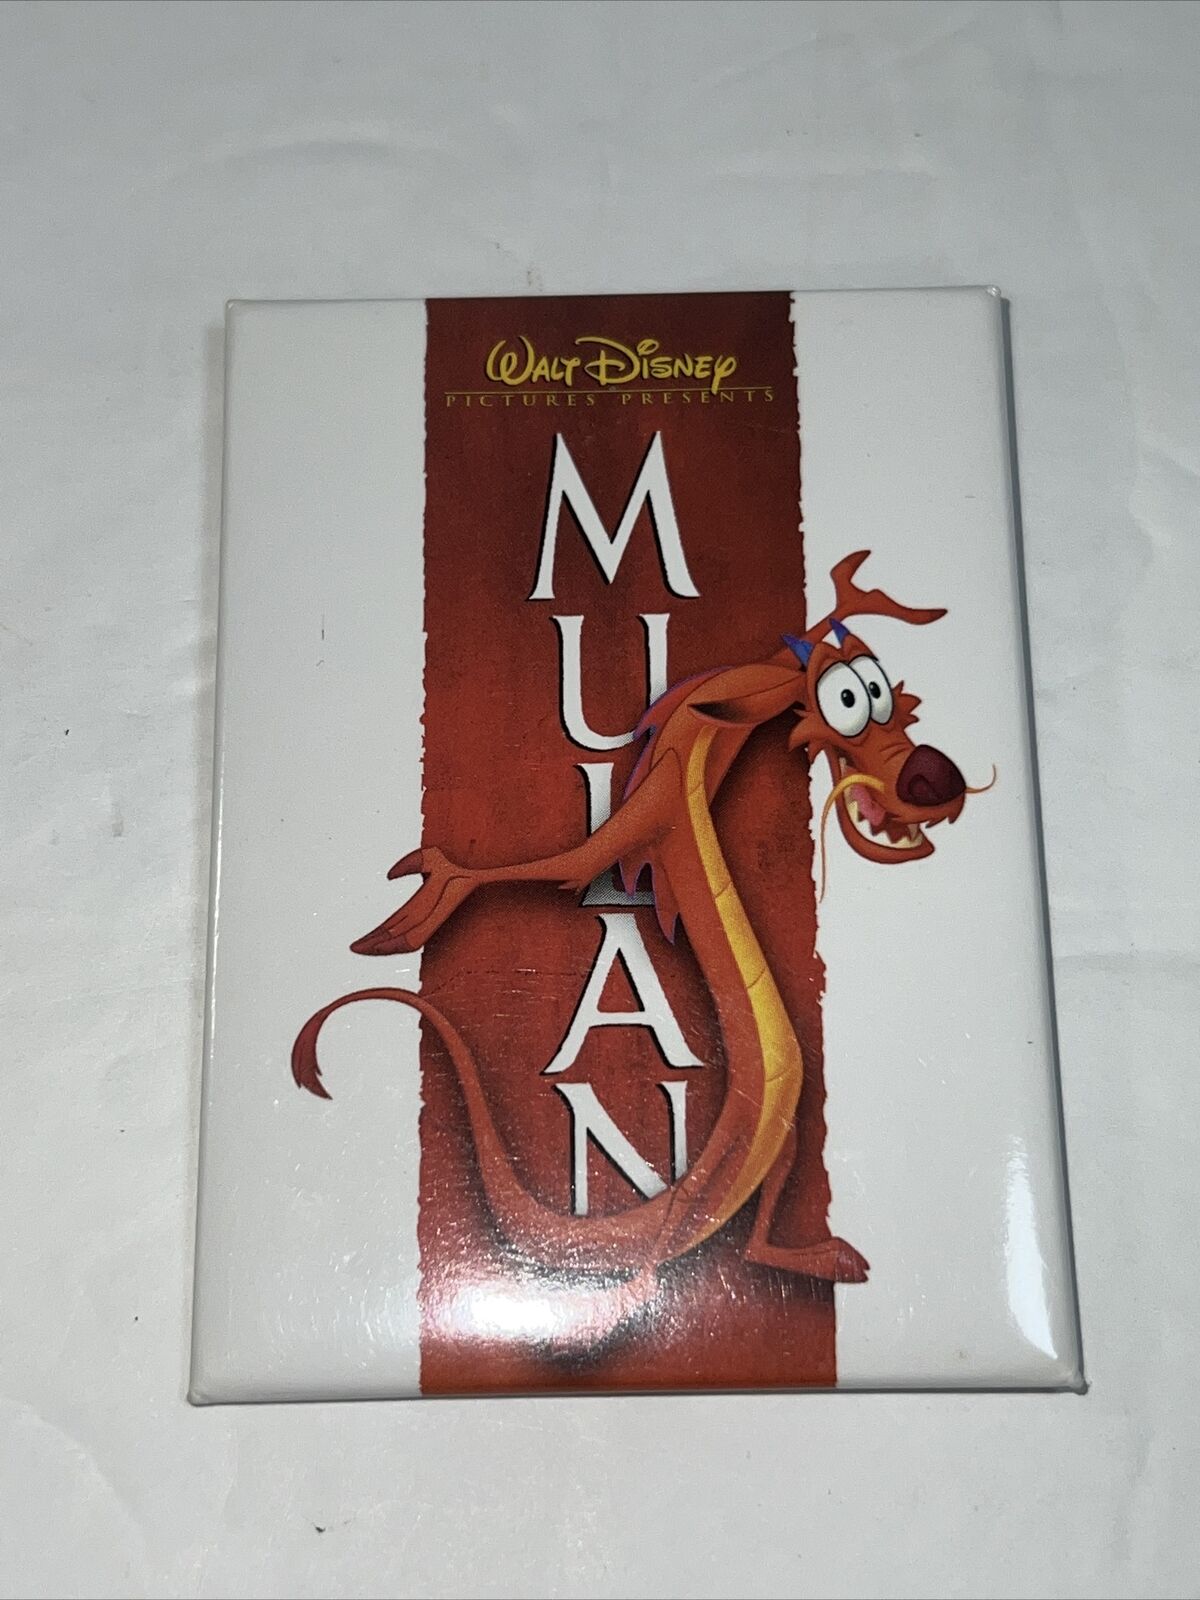 Vintage Disney Mulan Movie Button/Pin (Movie Theater Promo) Mushu